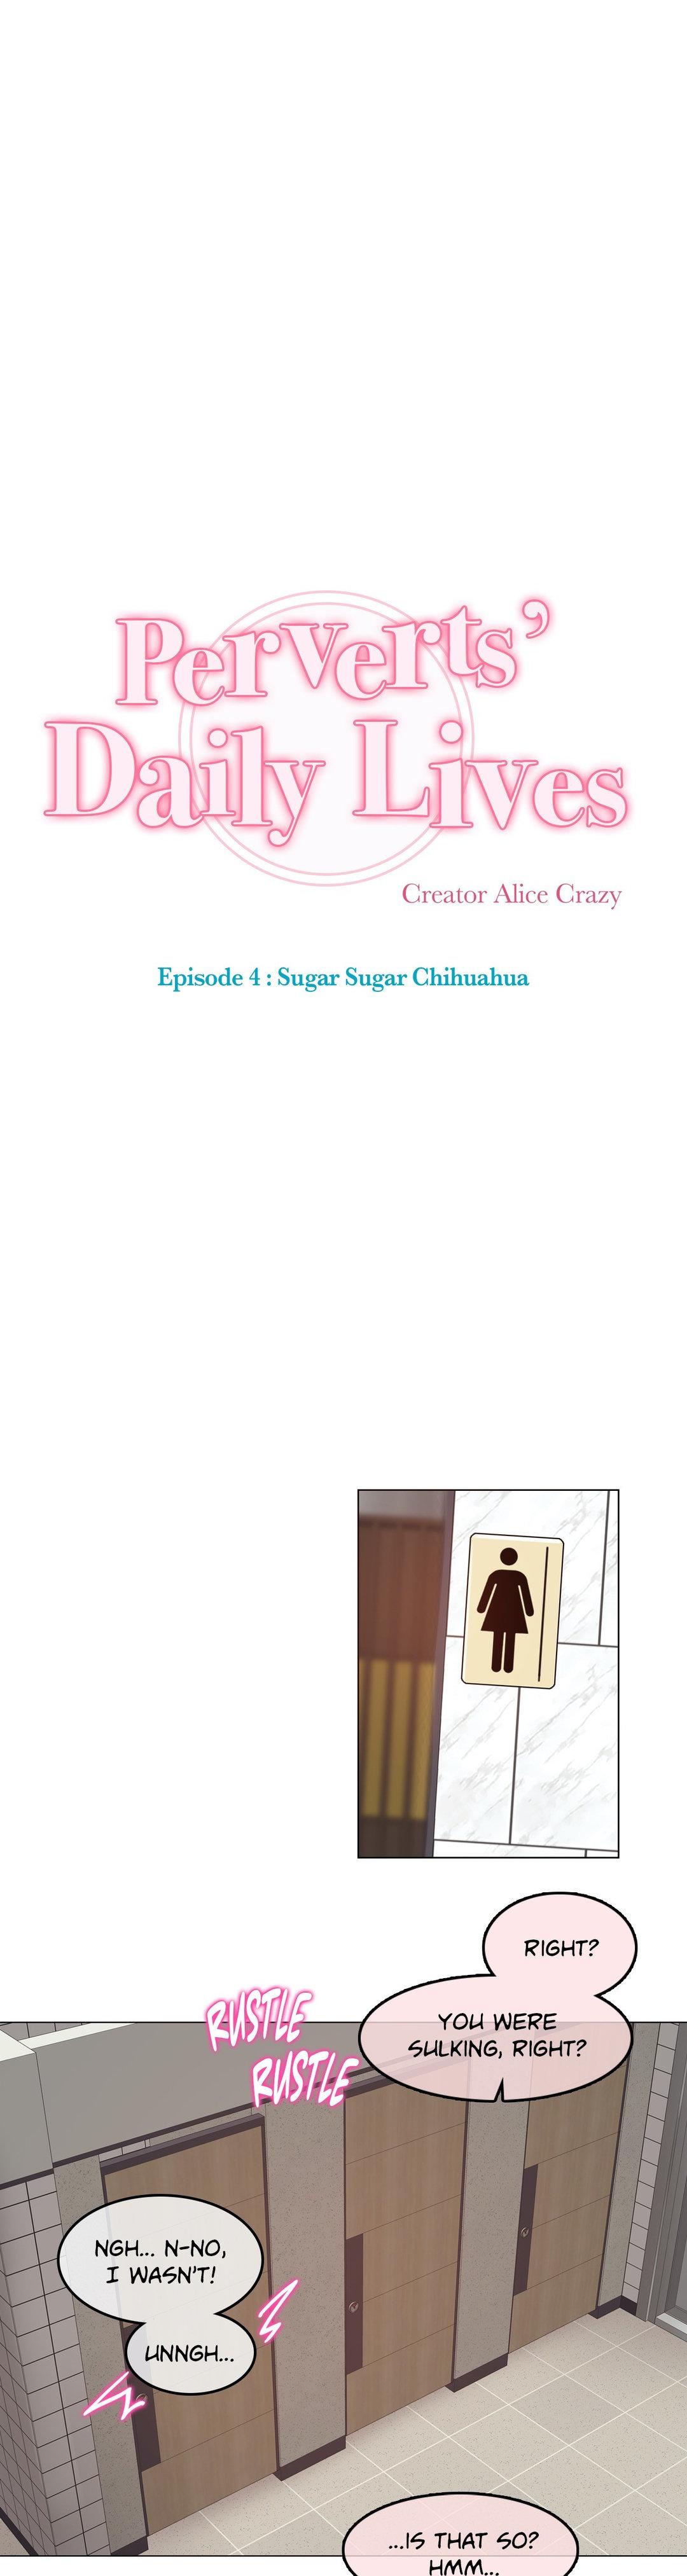 Perverts' Daily Lives Episode 4: Sugar Sugar Chihuahua 104